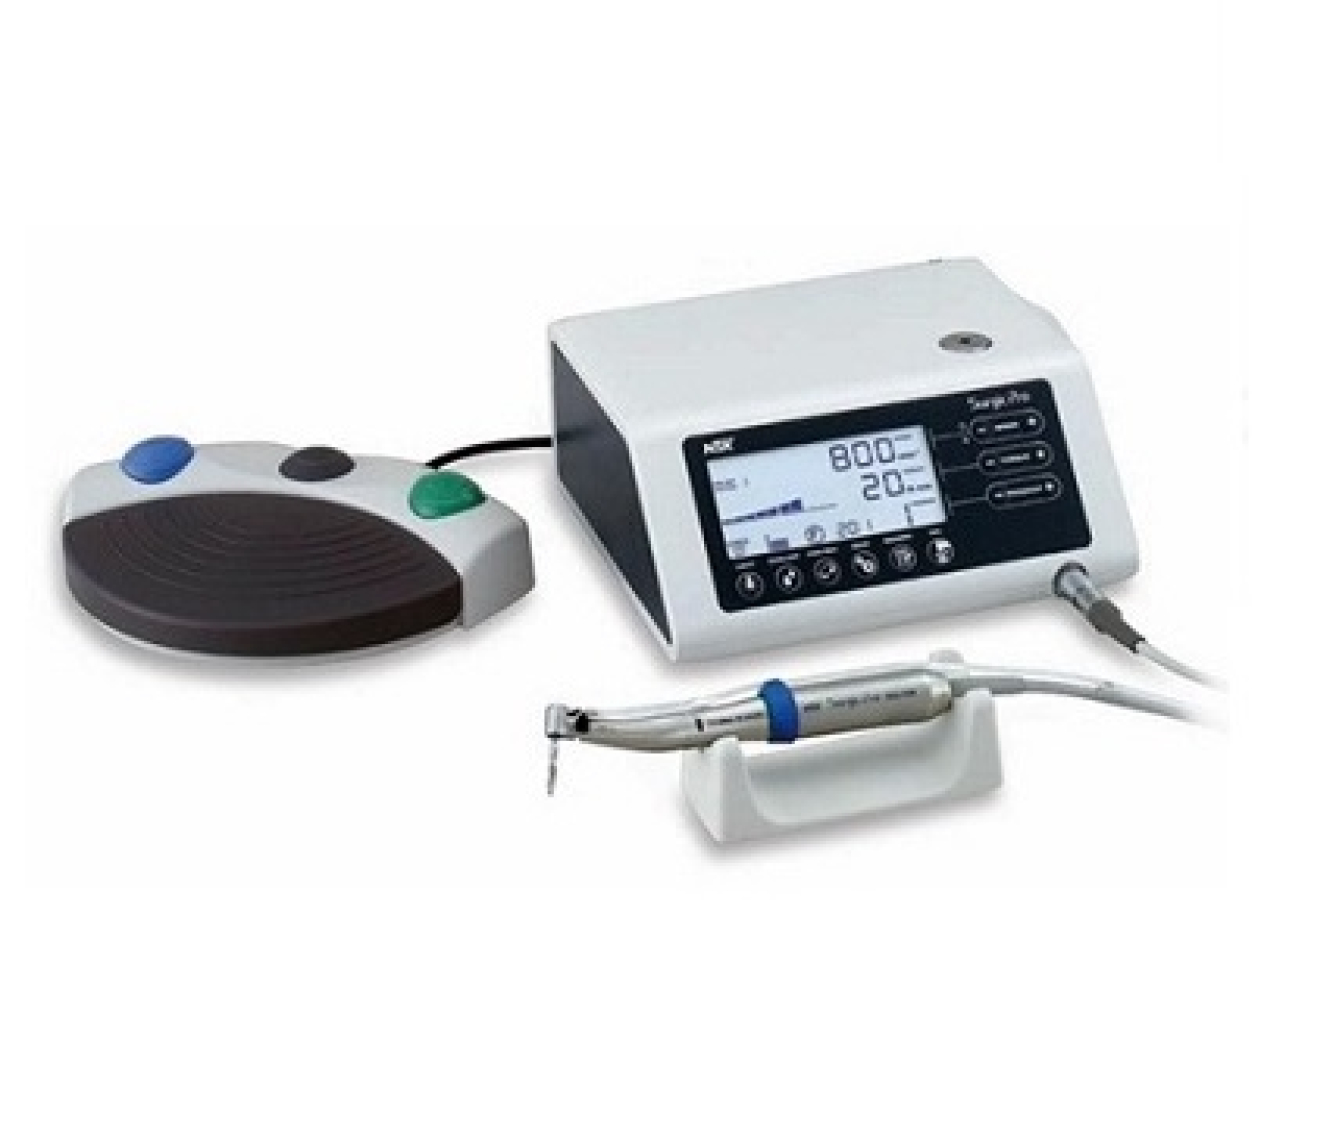 Y1001-933 Аппарат Surgic PRO для хирургии и имплантологии, c подсветкой LED, NSK (Япония)